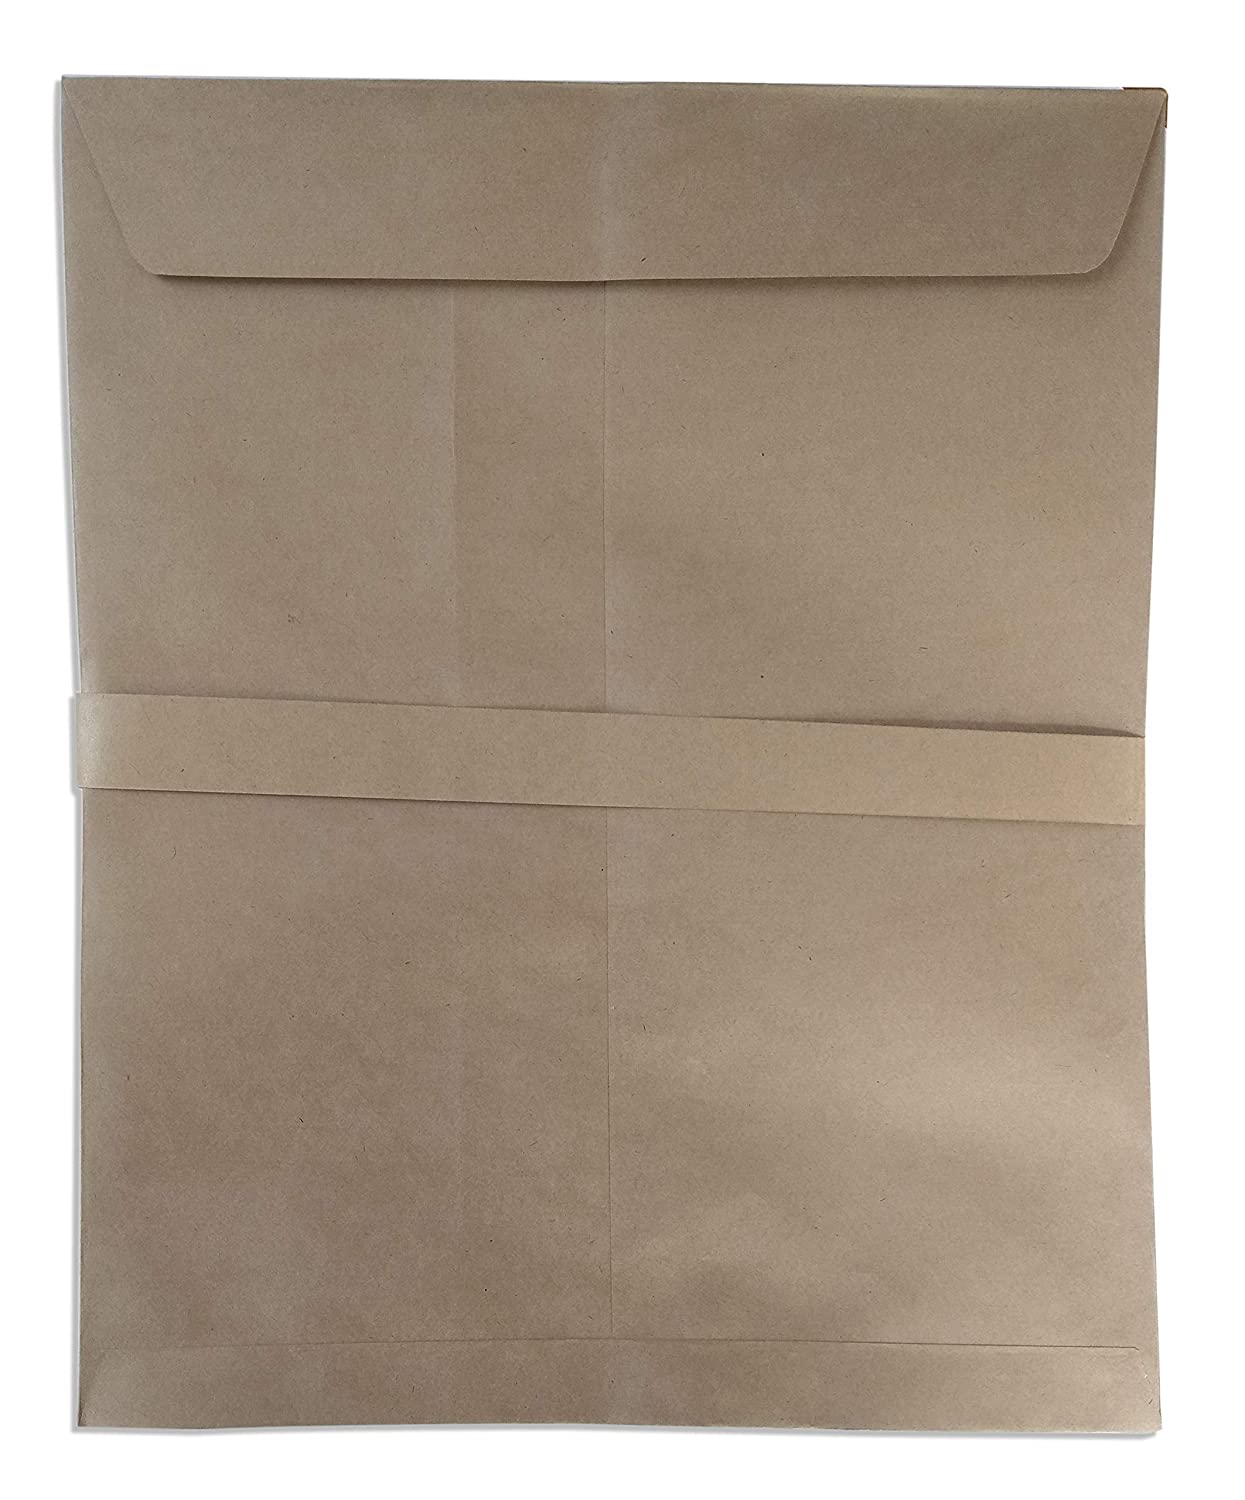 Pack Of 100 Hard Kraft Paper Envelope A4 Size 10x12 Hard Paper Envelope